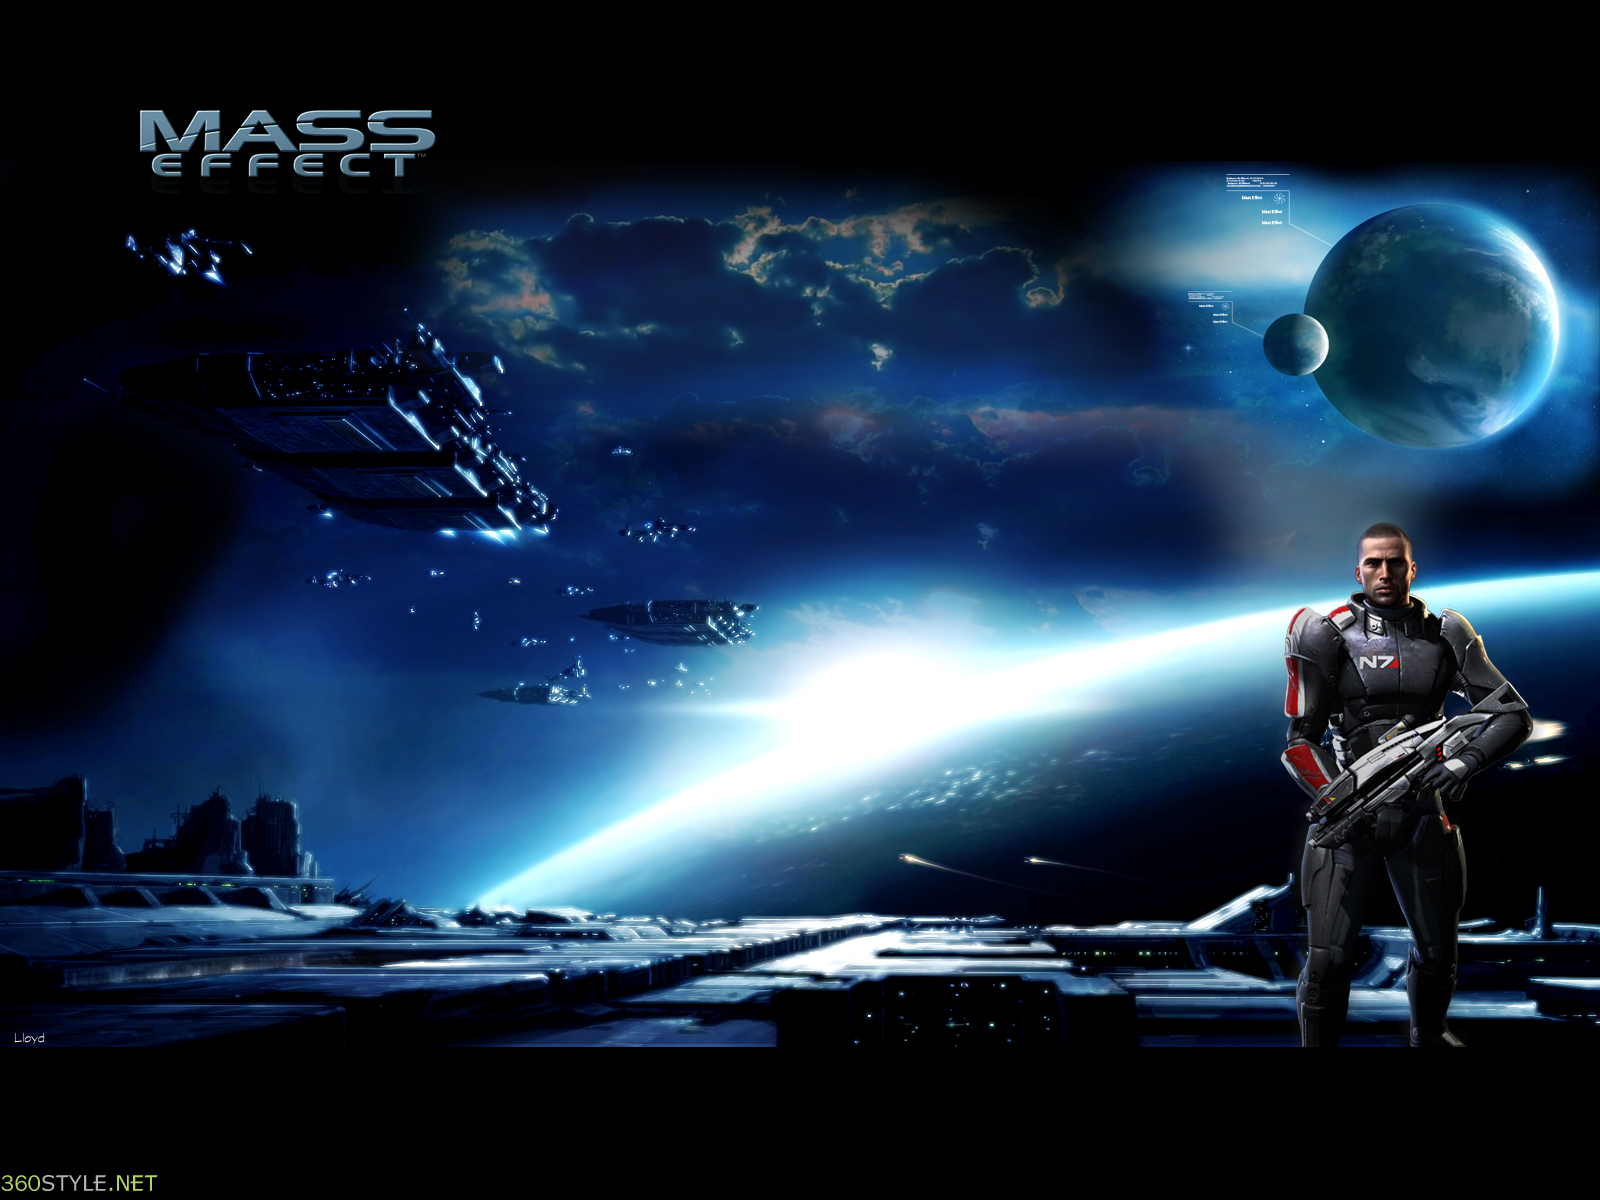 71+] Mass Effect Hd Wallpaper - WallpaperSafari